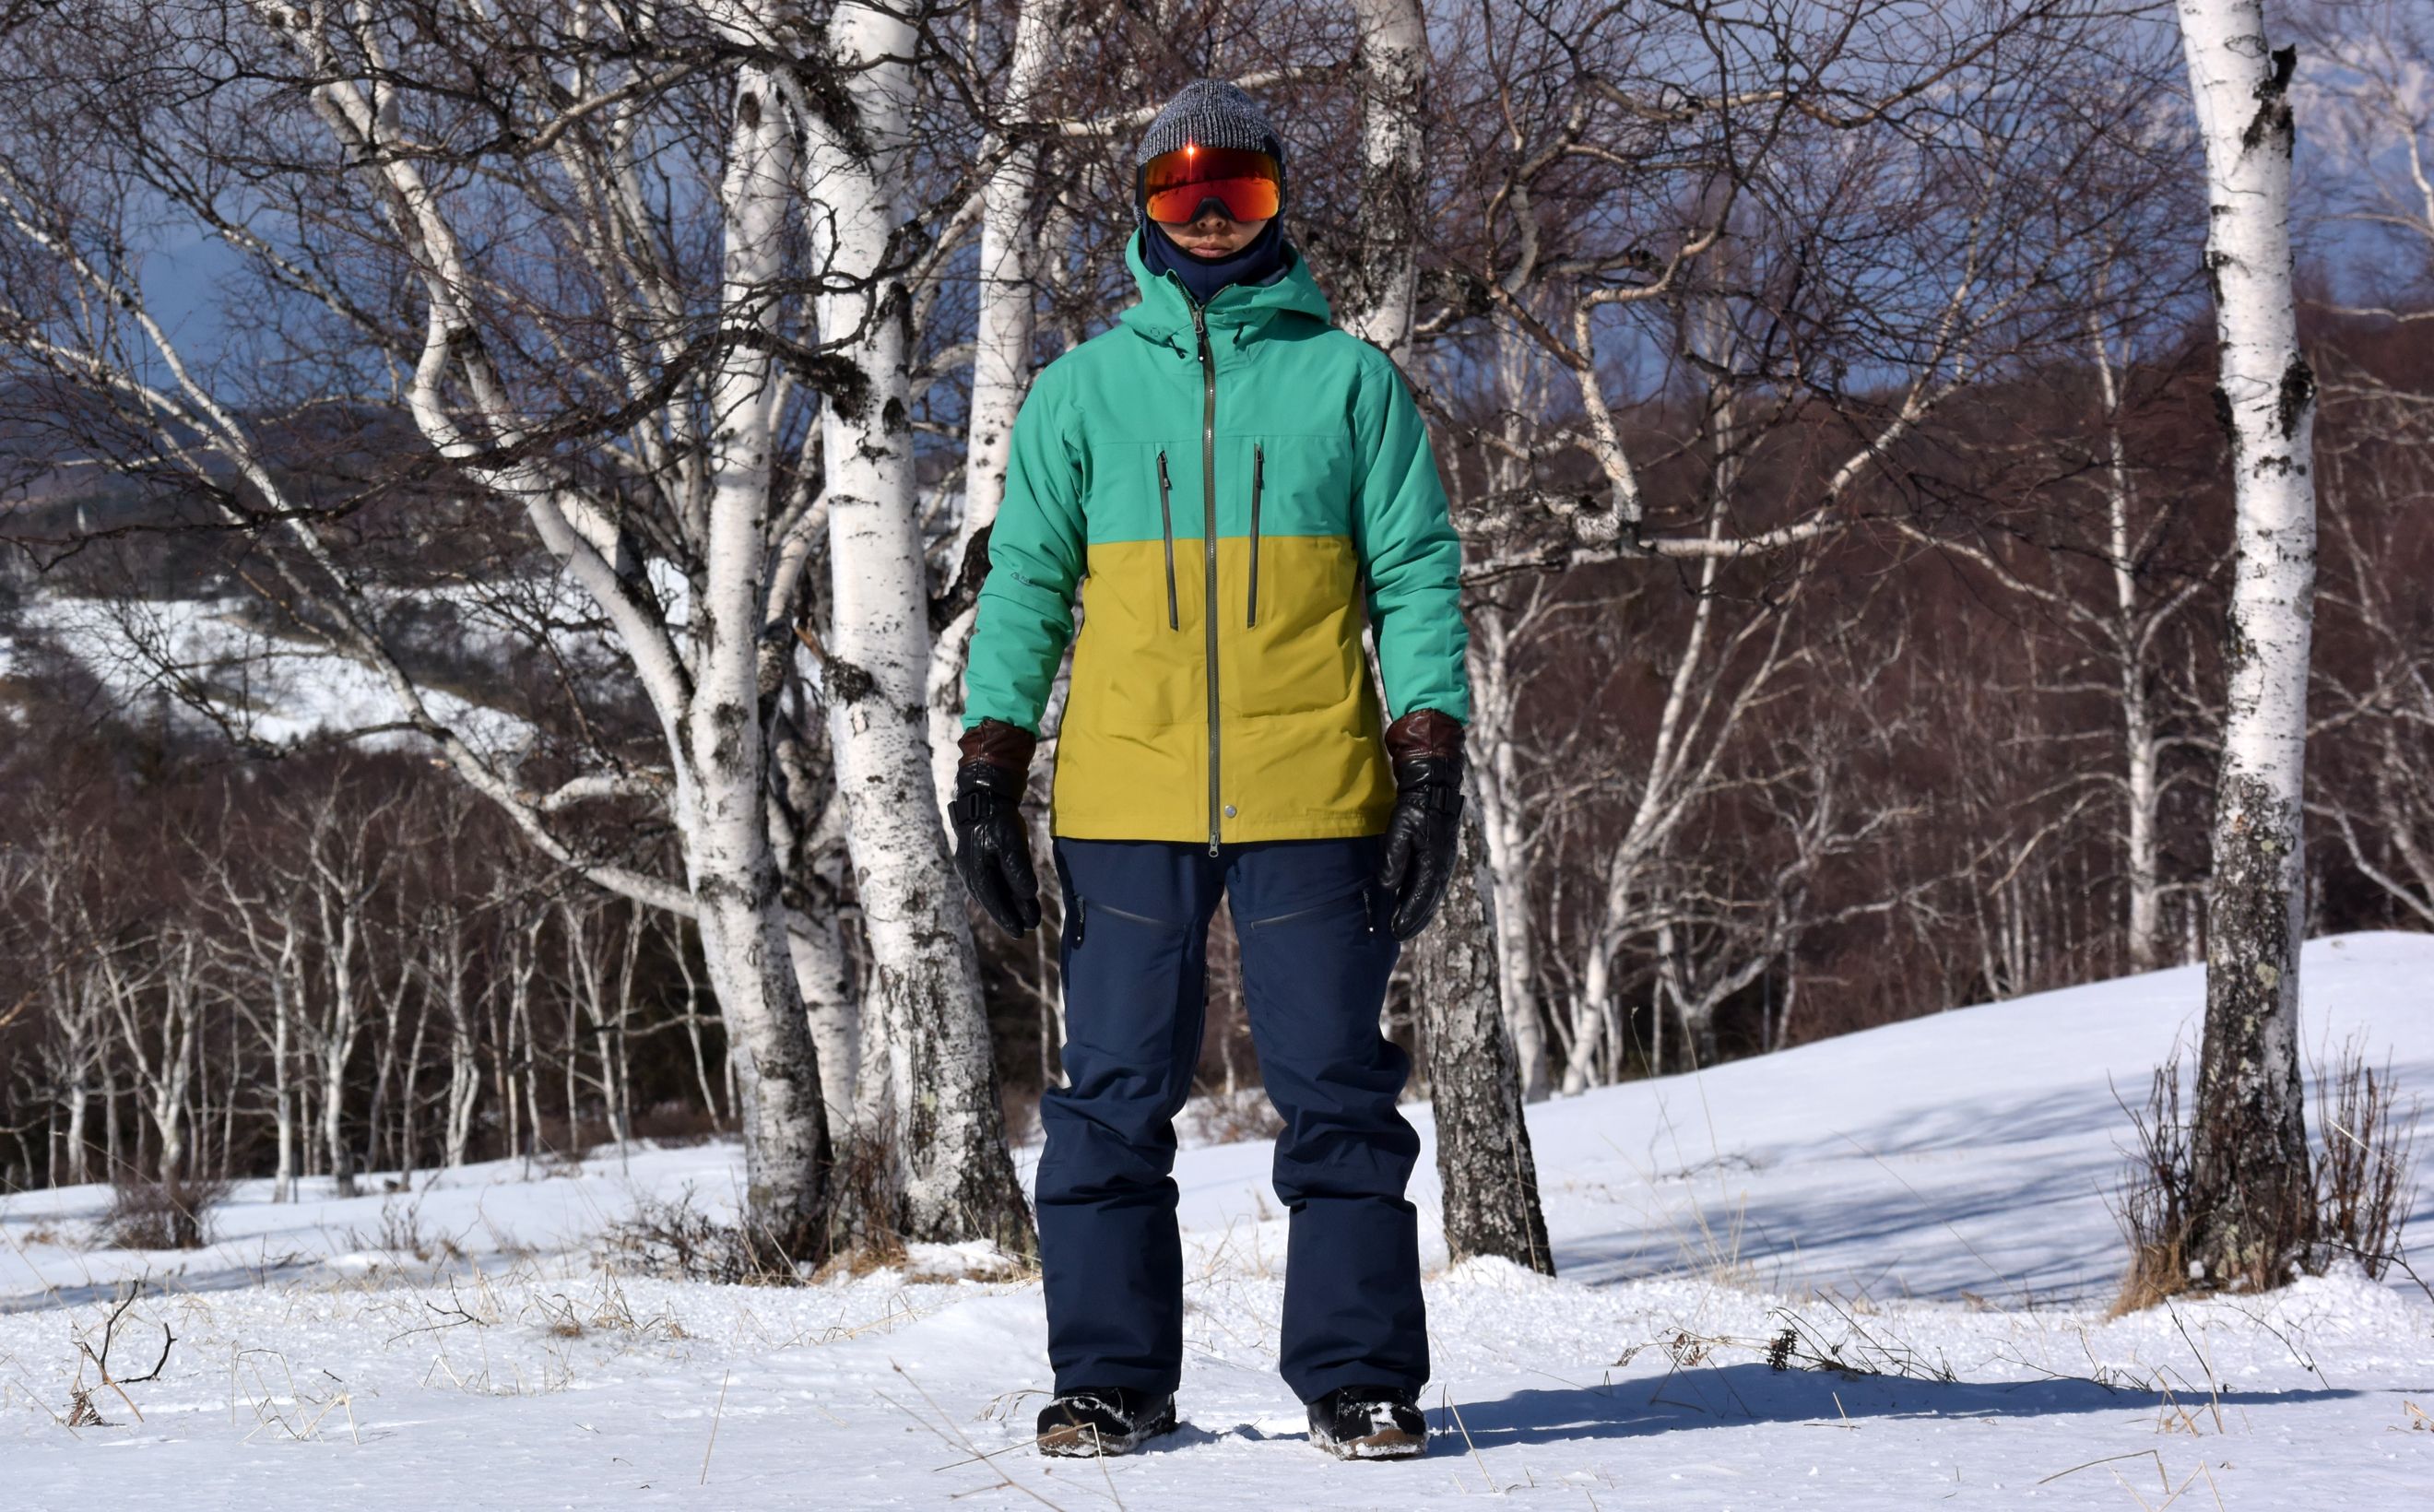 無料発送 XL) (ケルプ スノーボードジャケット スキー クーパー メンズ Flylow 日本未入荷の素晴らしい商品をご案内します！ -  スノーボード - www.ksc-kcf.org